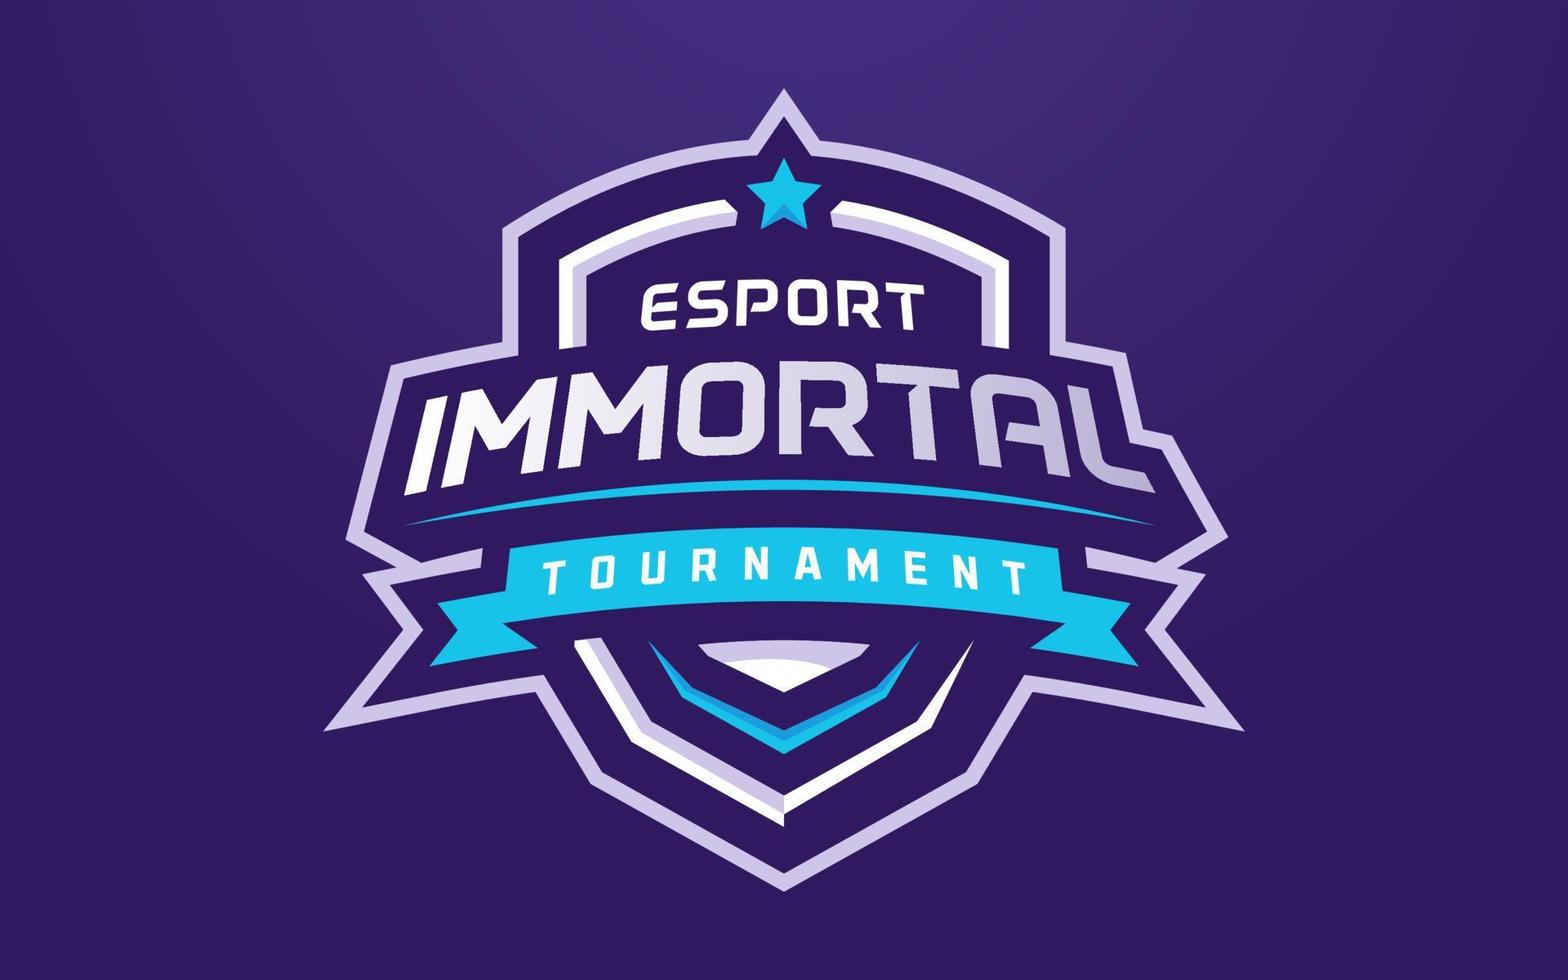 modello di logo eSport immortale per squadra di gioco o torneo vettore